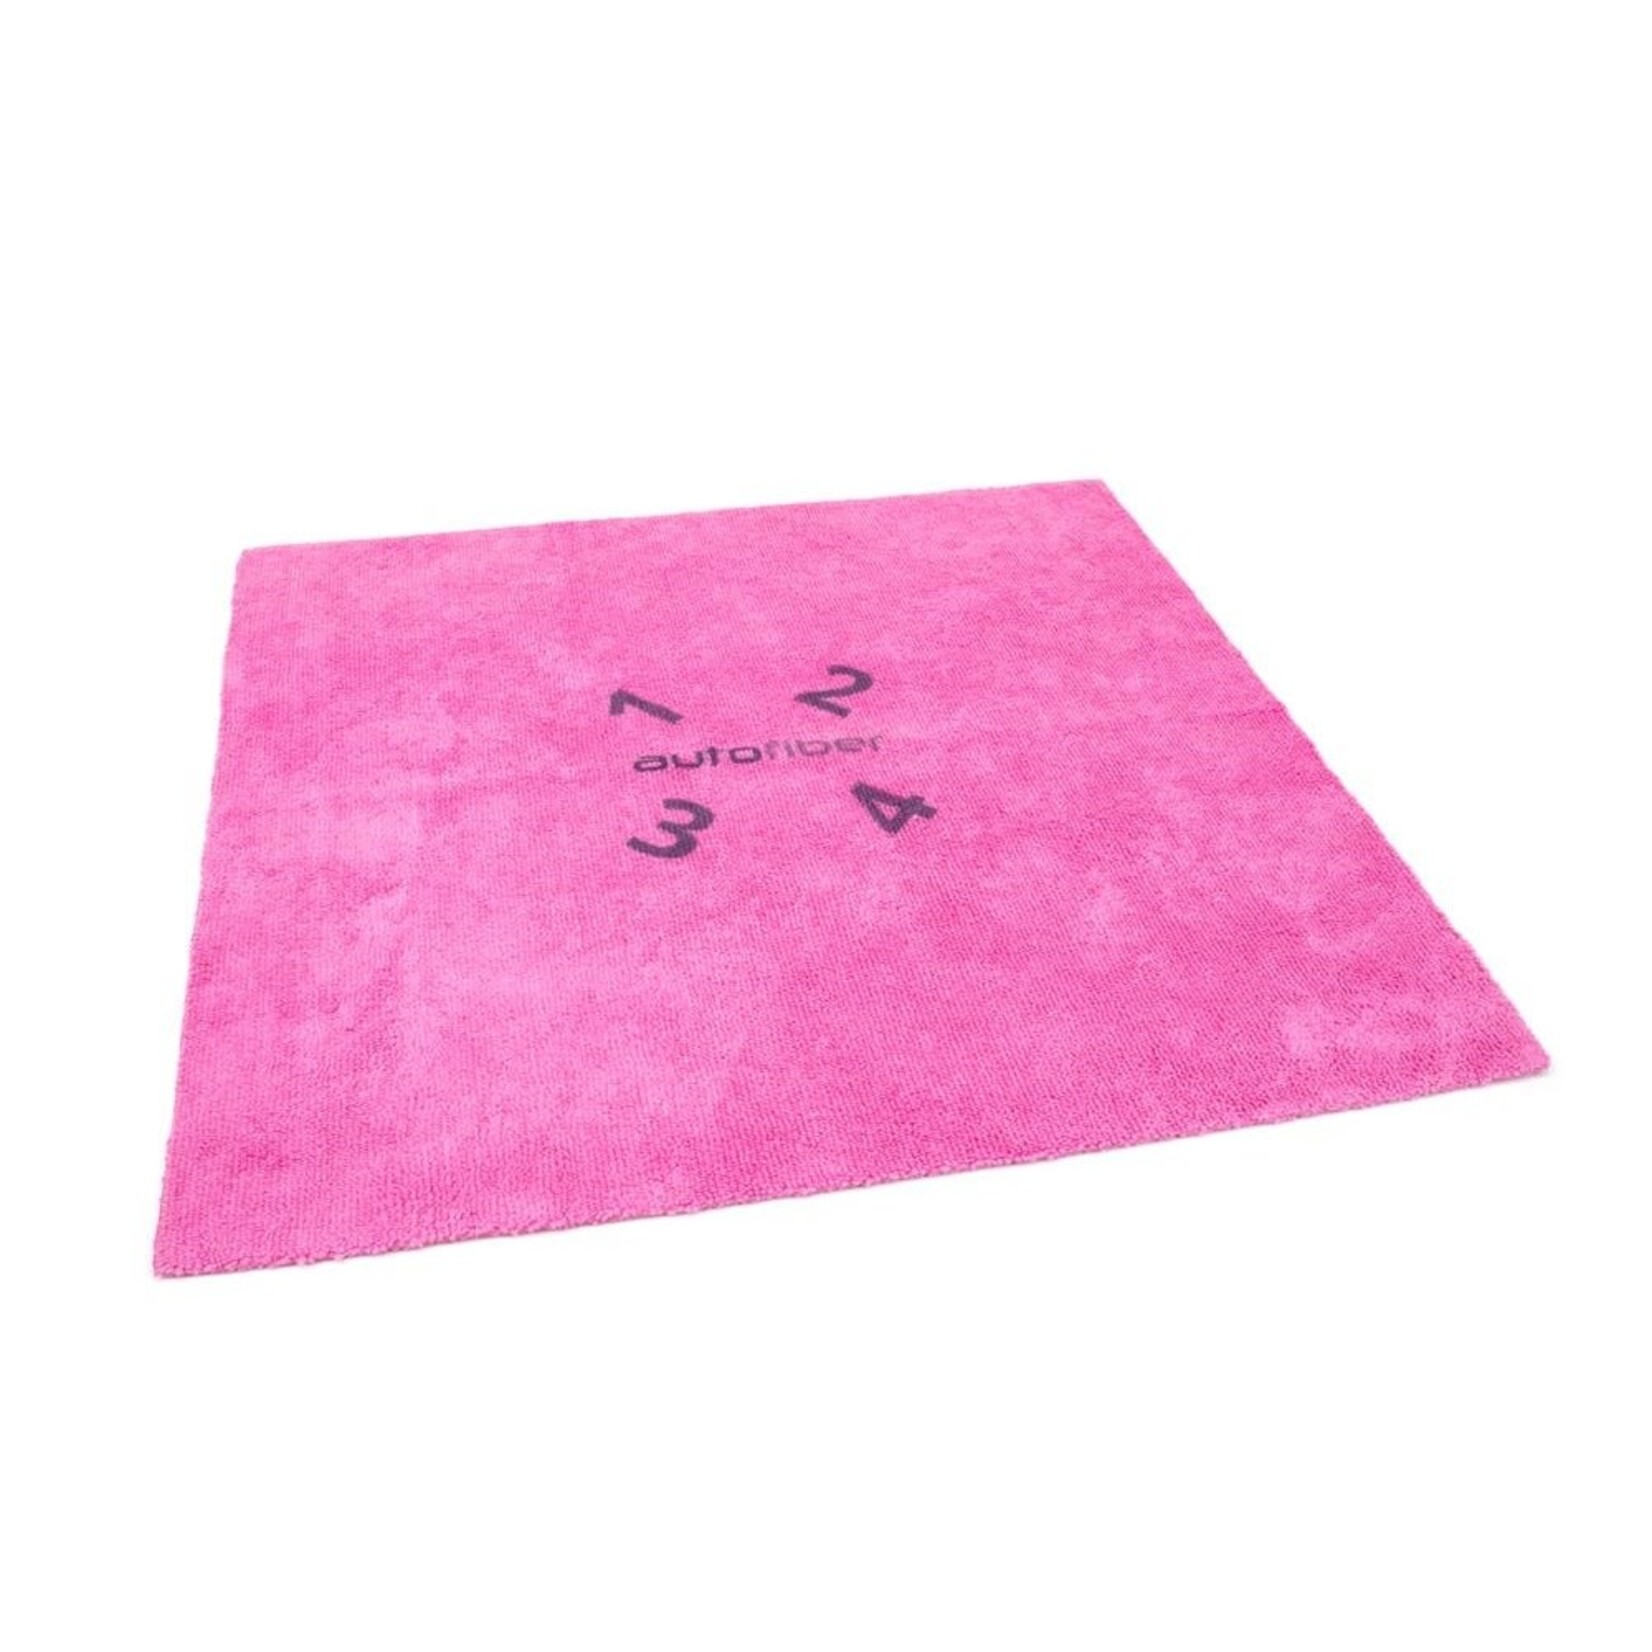 AutoFiber AutoFiber - Quadrant Coating Leveling Towel (Pink)